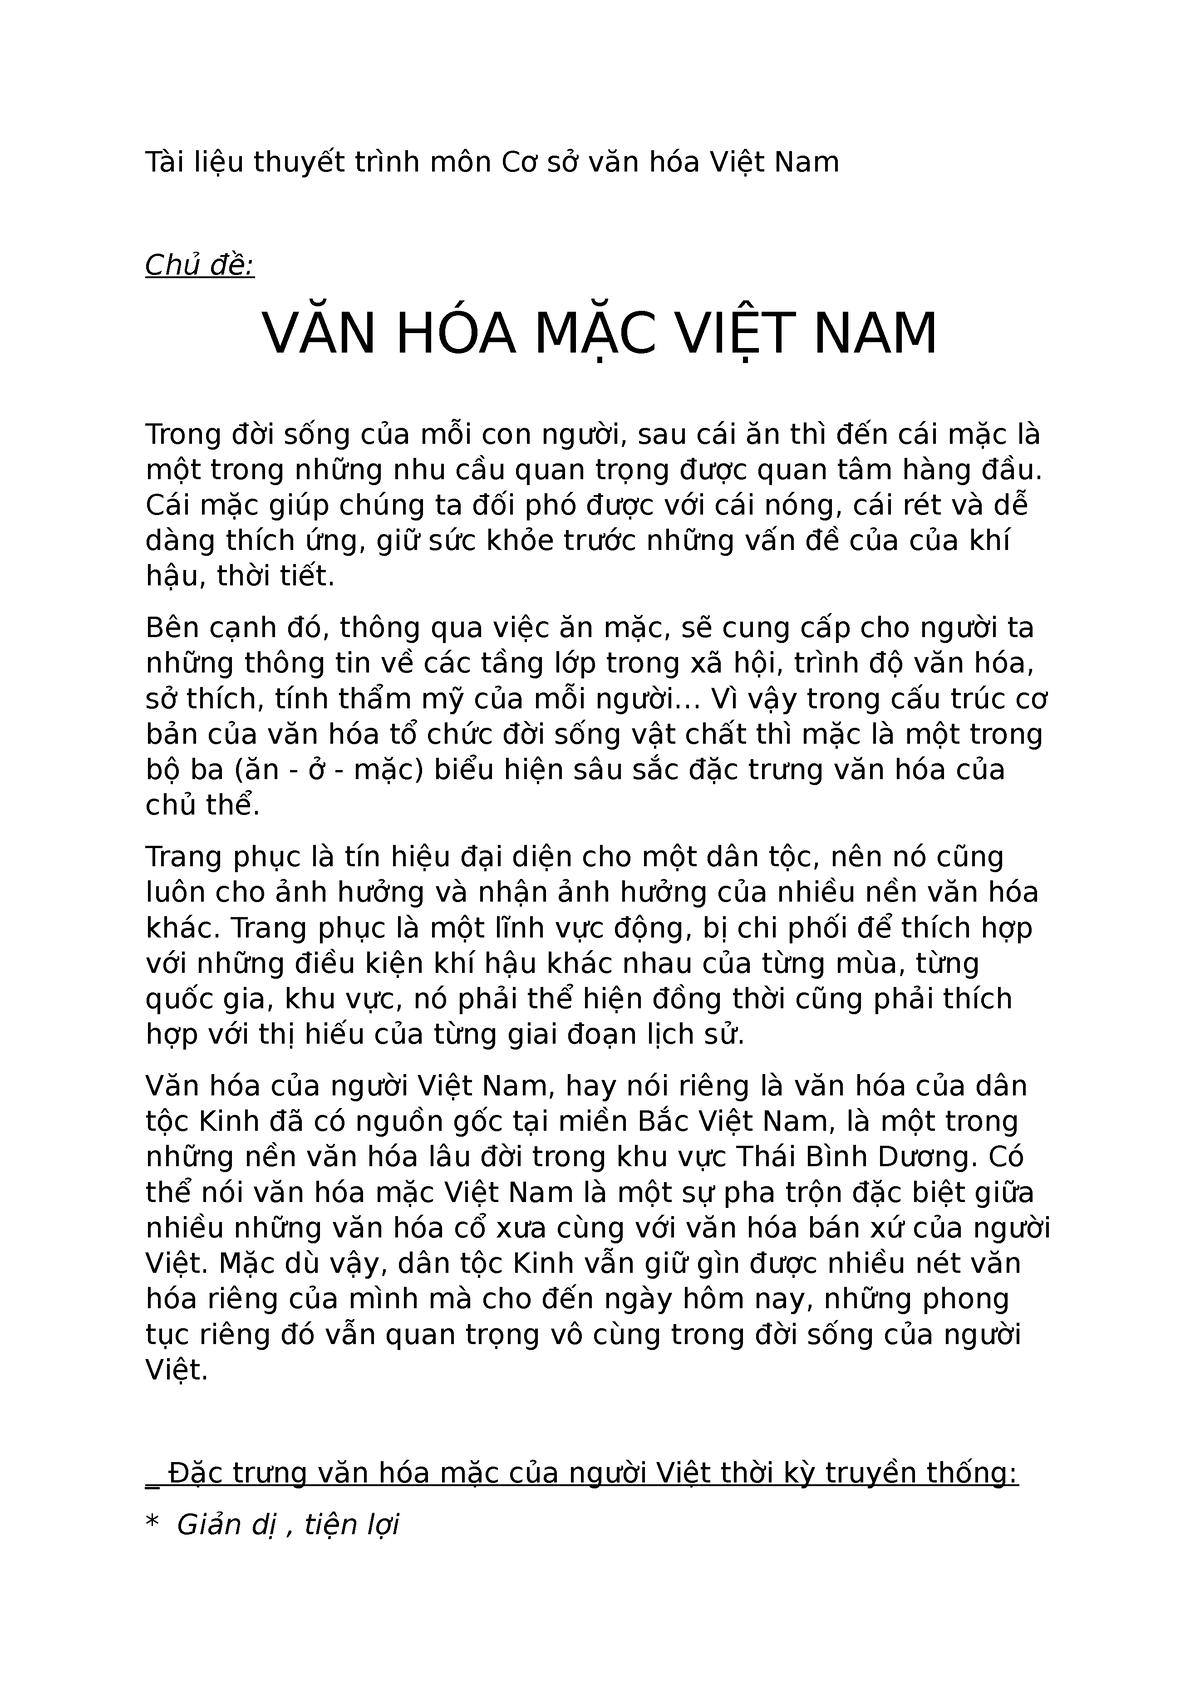 Văn hóa mặc Việt Nam - Cơ sở Văn hóa Việt Nam - Tài liệu thuyết trình môn Cơ sở văn hóa Việt Nam Chủ - Studocu